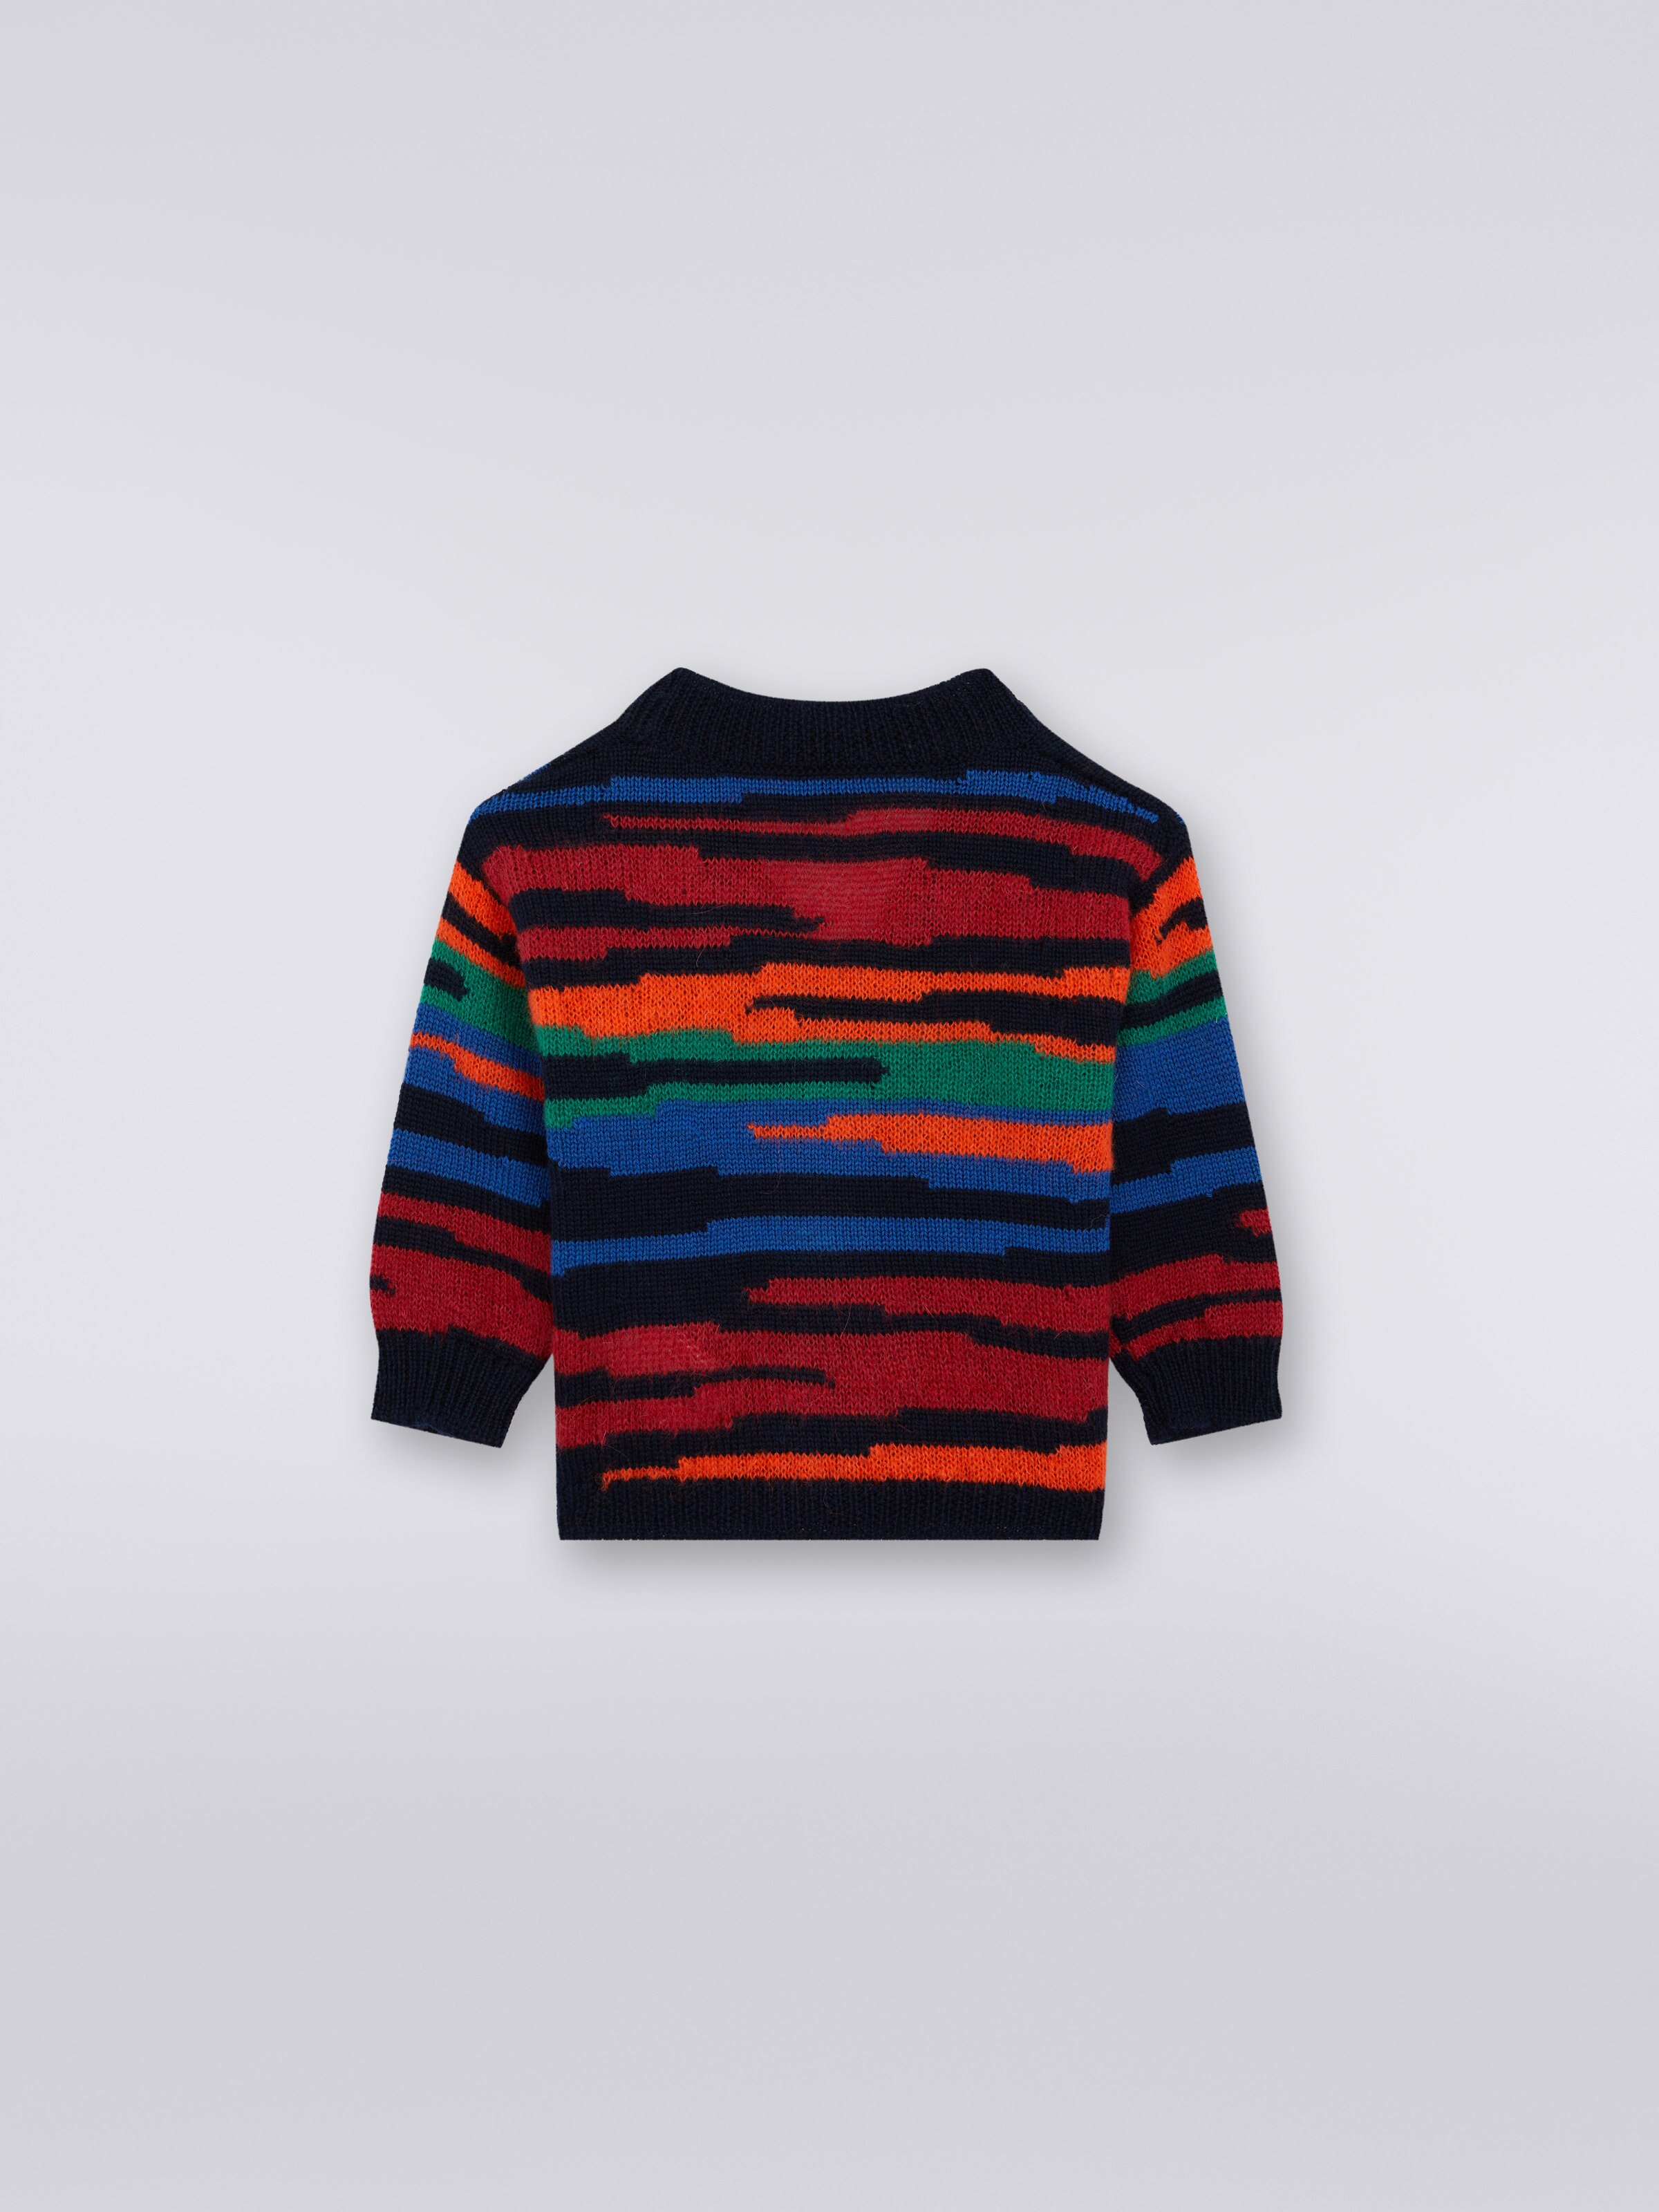 Slub wool knit cardigan, Multicoloured  - 1